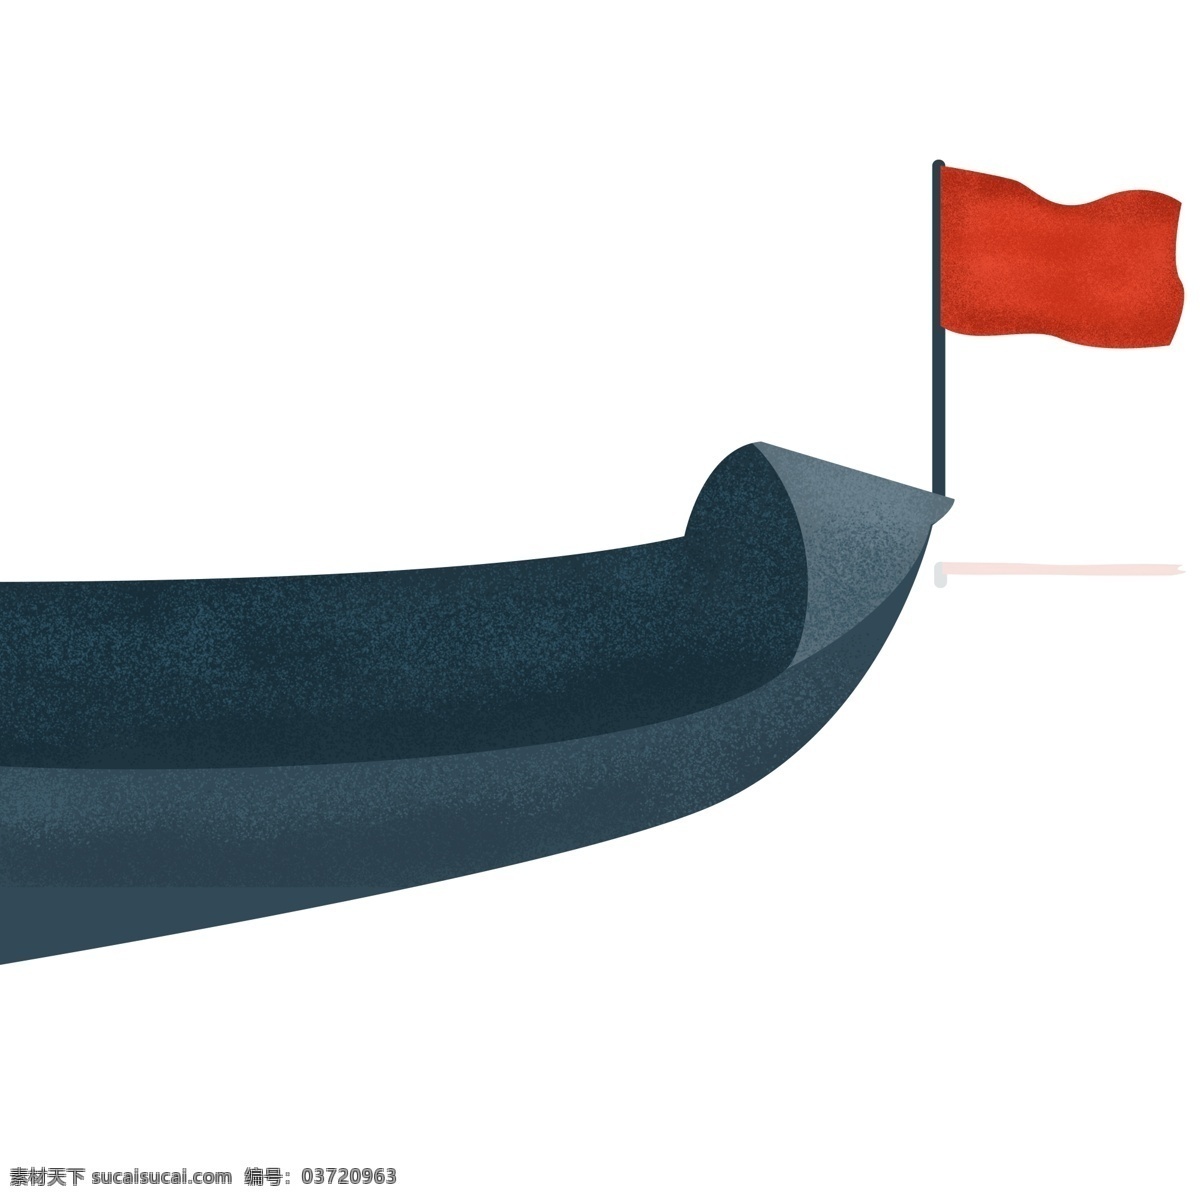 小 清新 小船 国旗 商用 元素 小清新 卡通 简约 插画设计 船头